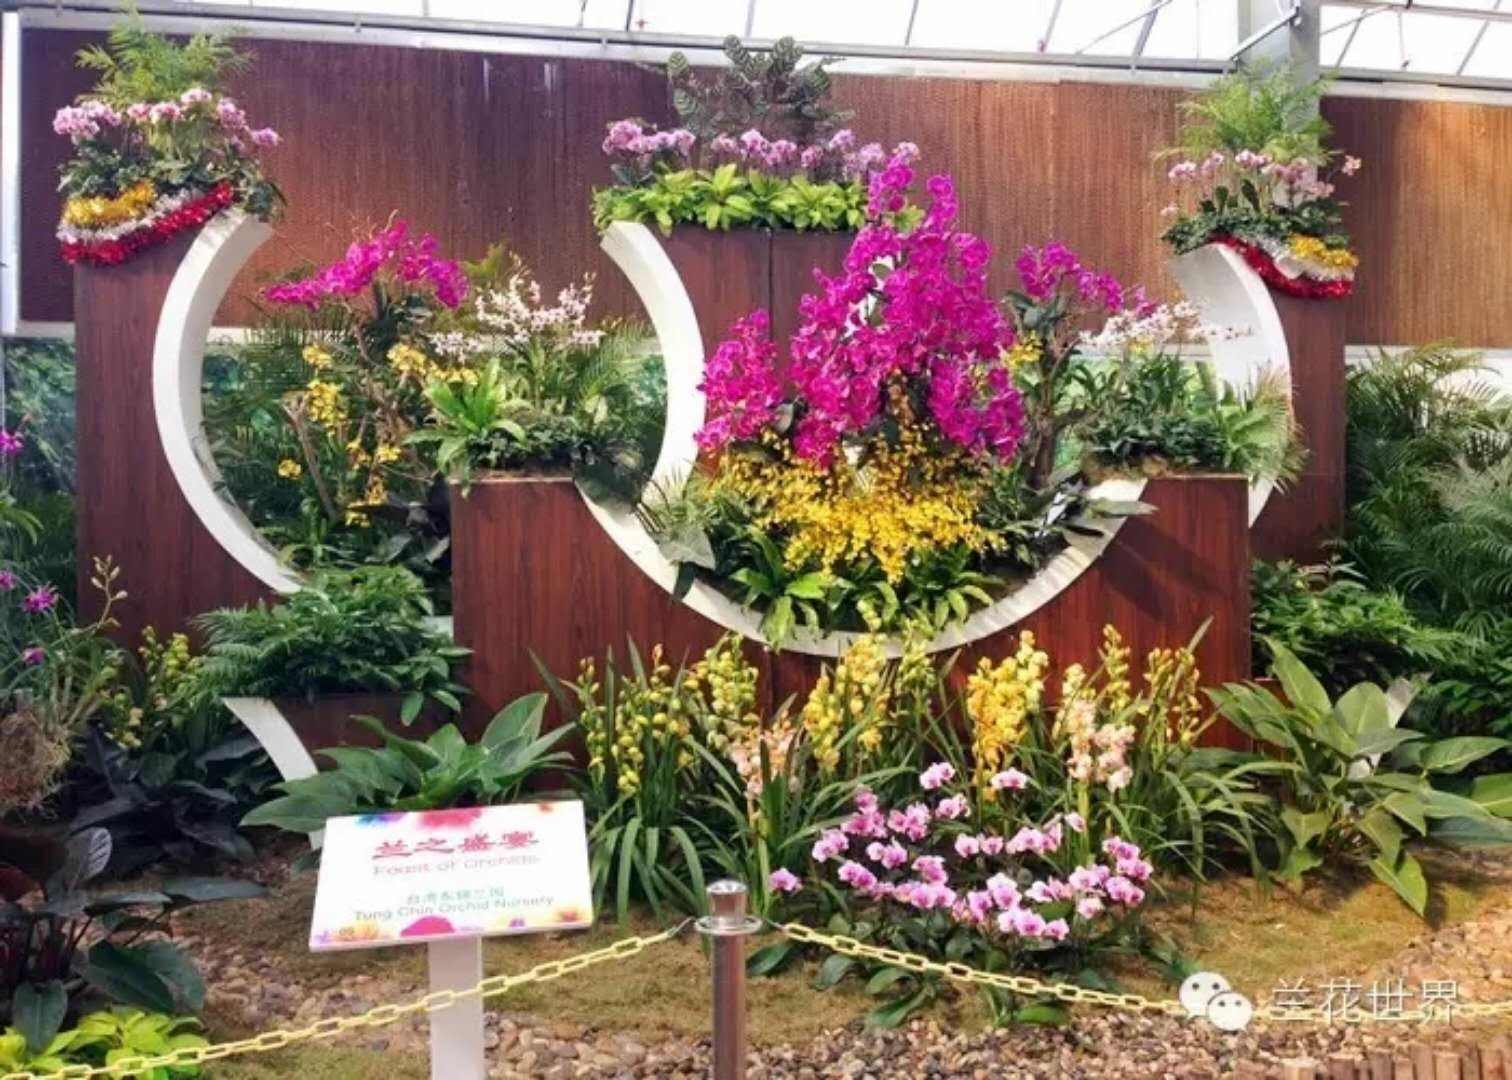 来自台湾的展商营造的兰花景观